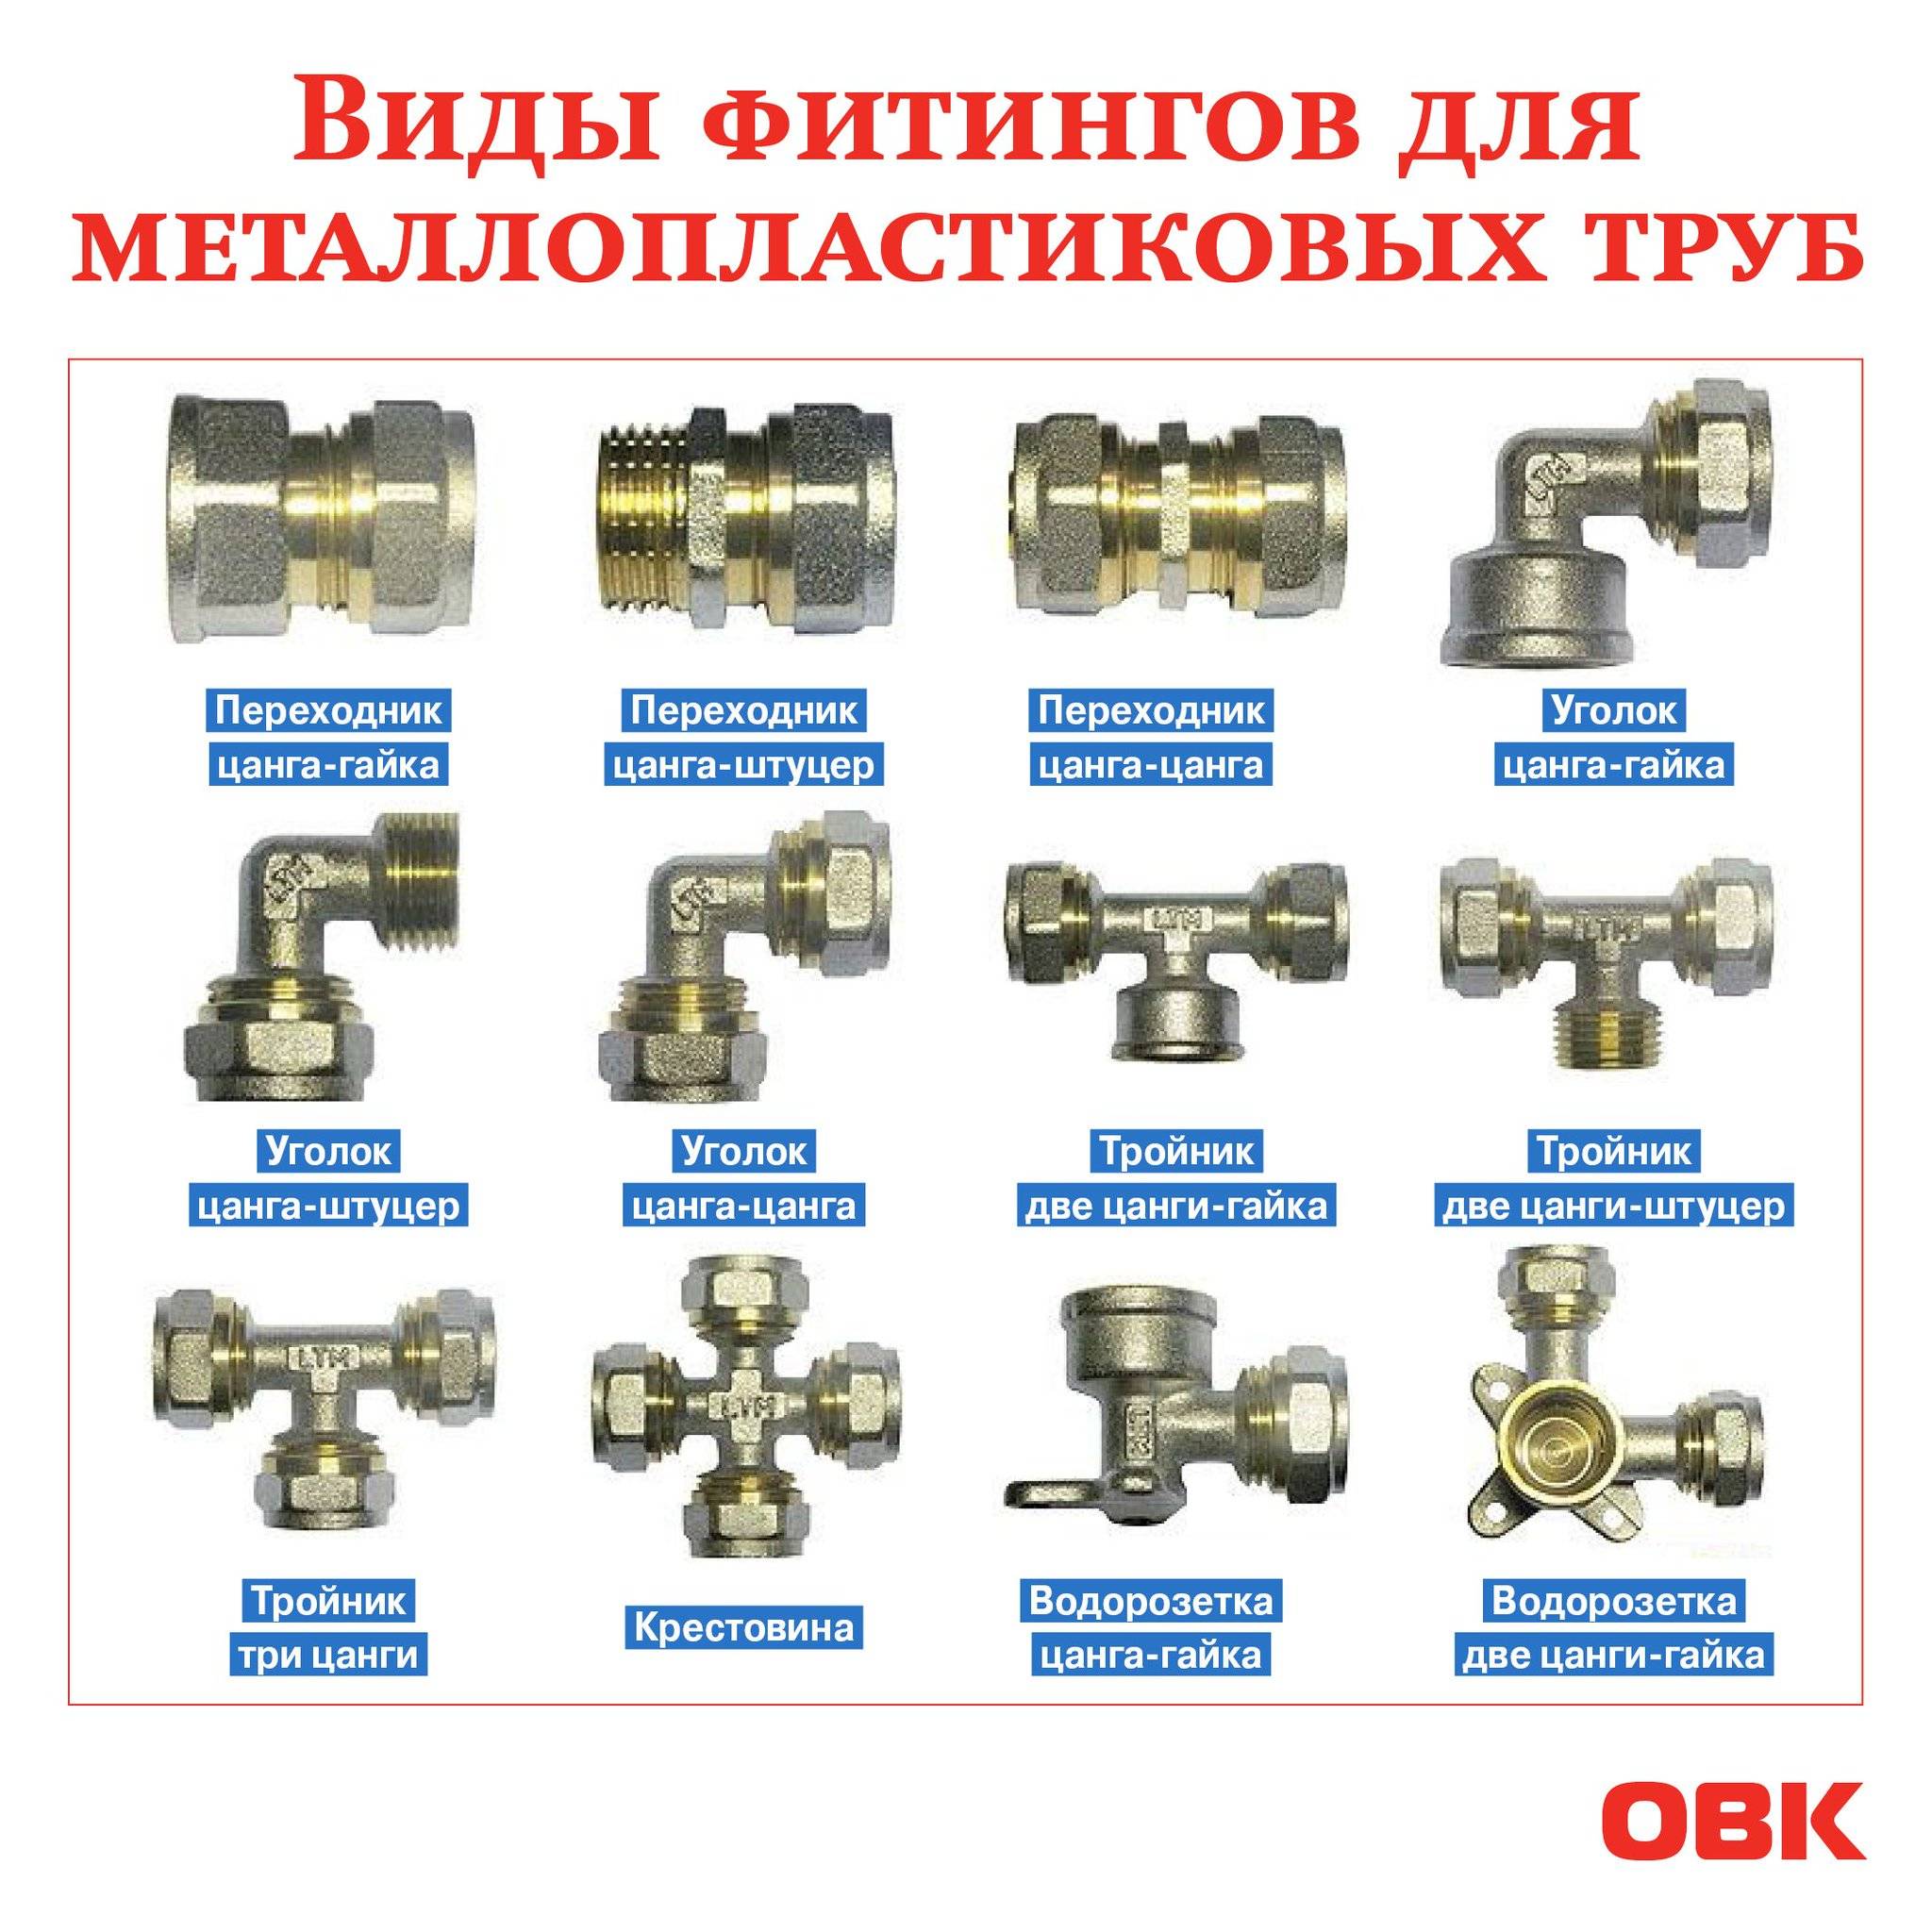 Диаметры металлопластиковых труб для водопровода таблица